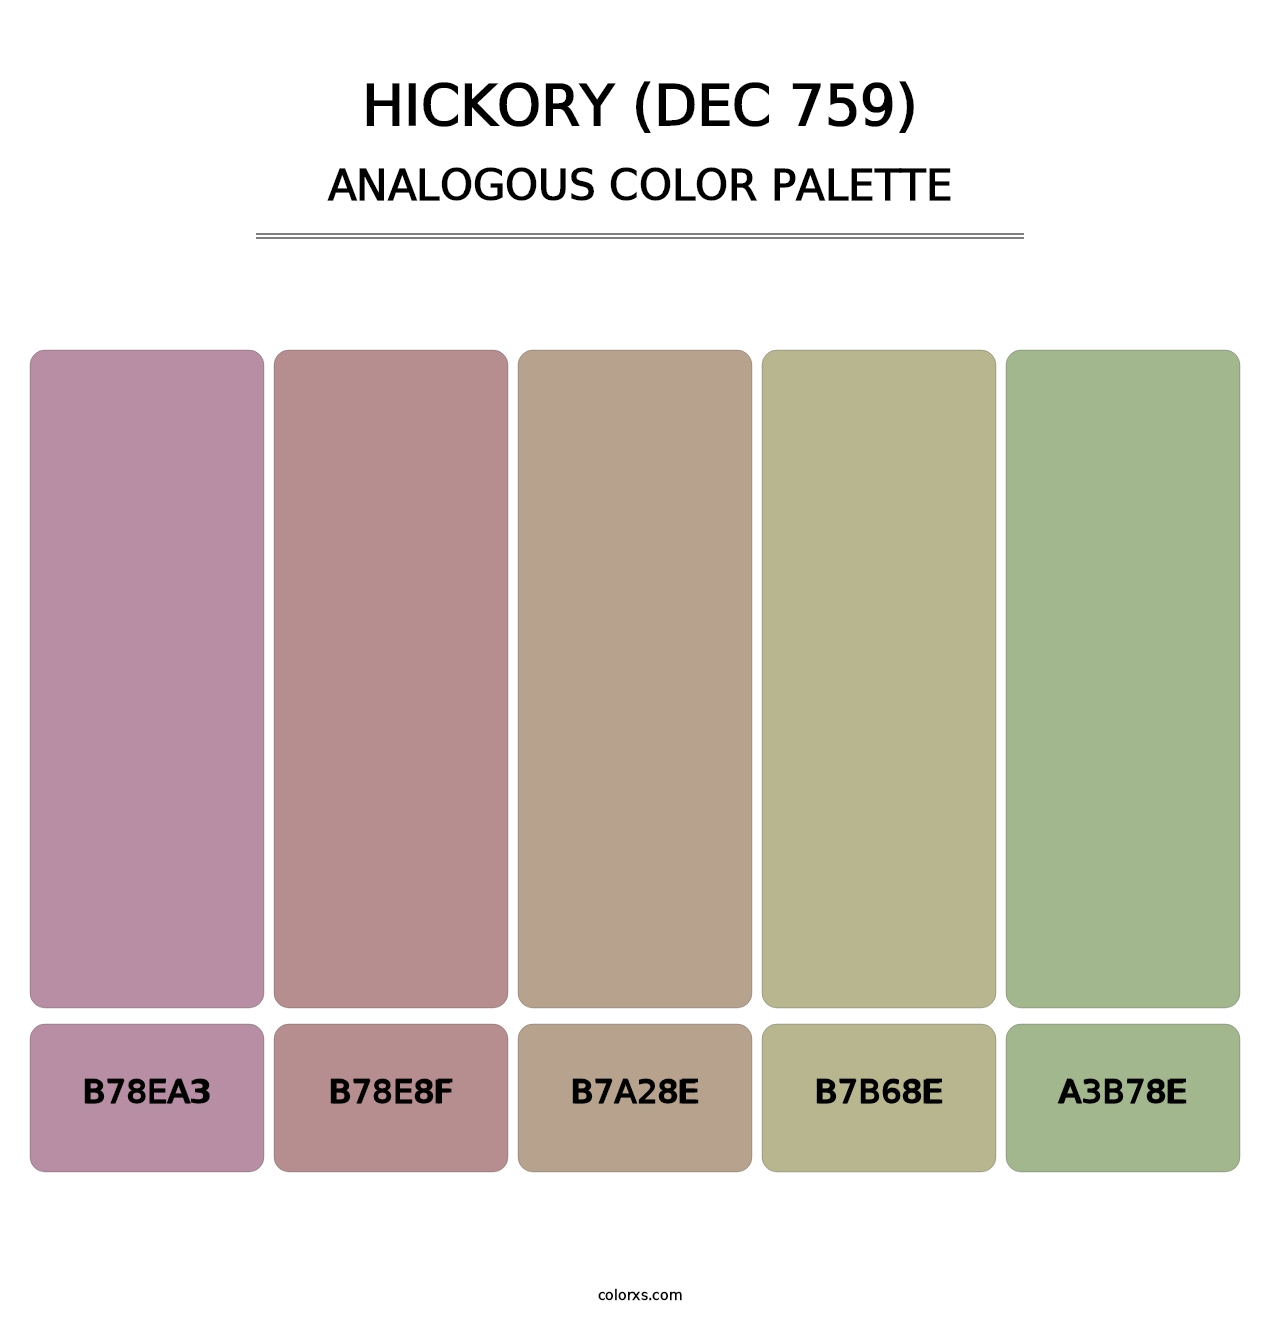 Hickory (DEC 759) - Analogous Color Palette